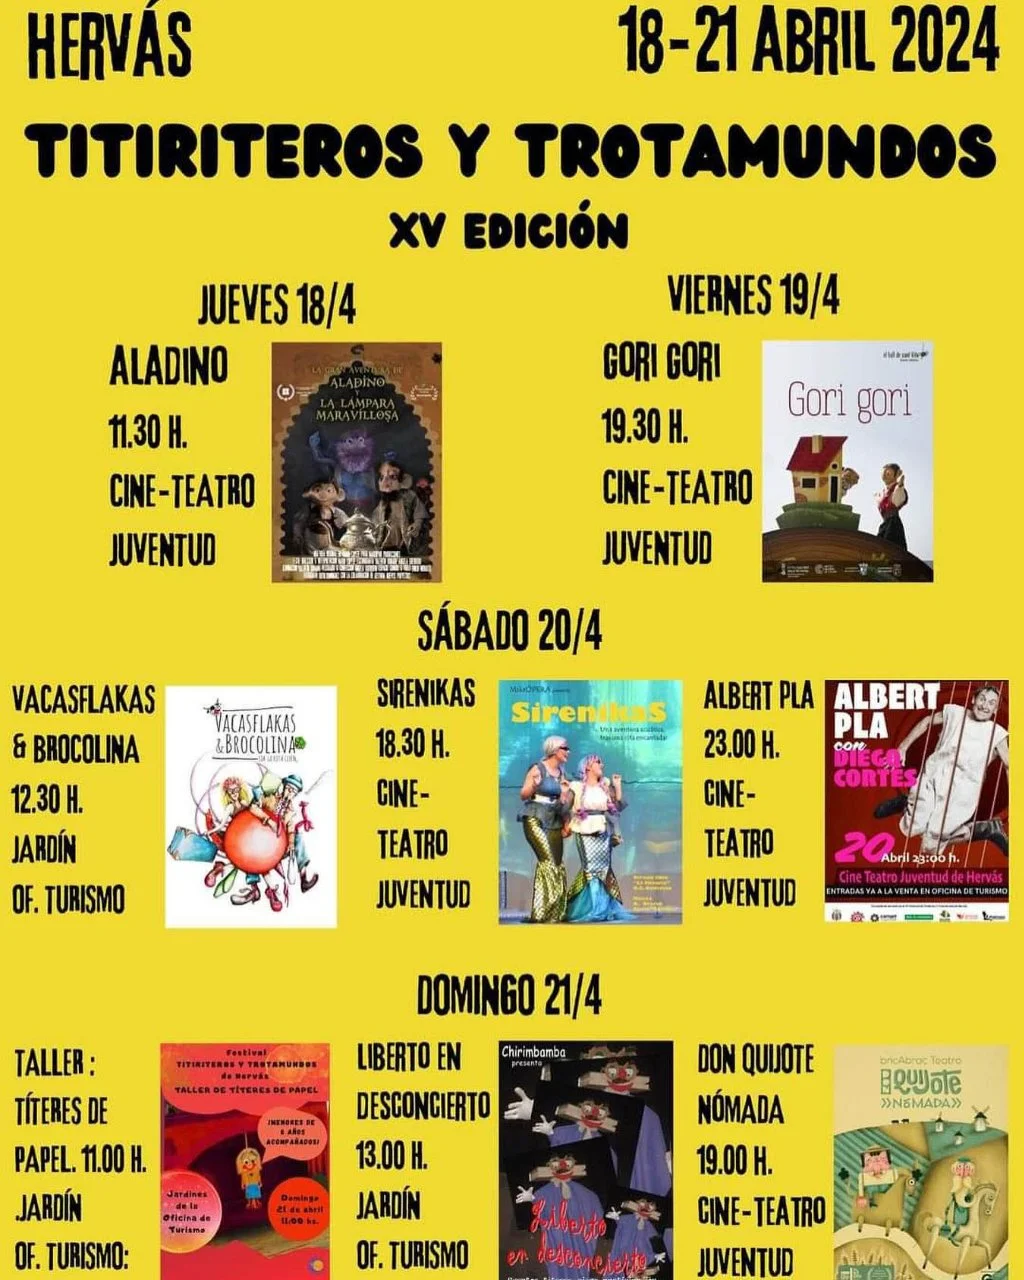 Festival de Titiriteros y Trotamundos 2024 en Hervás